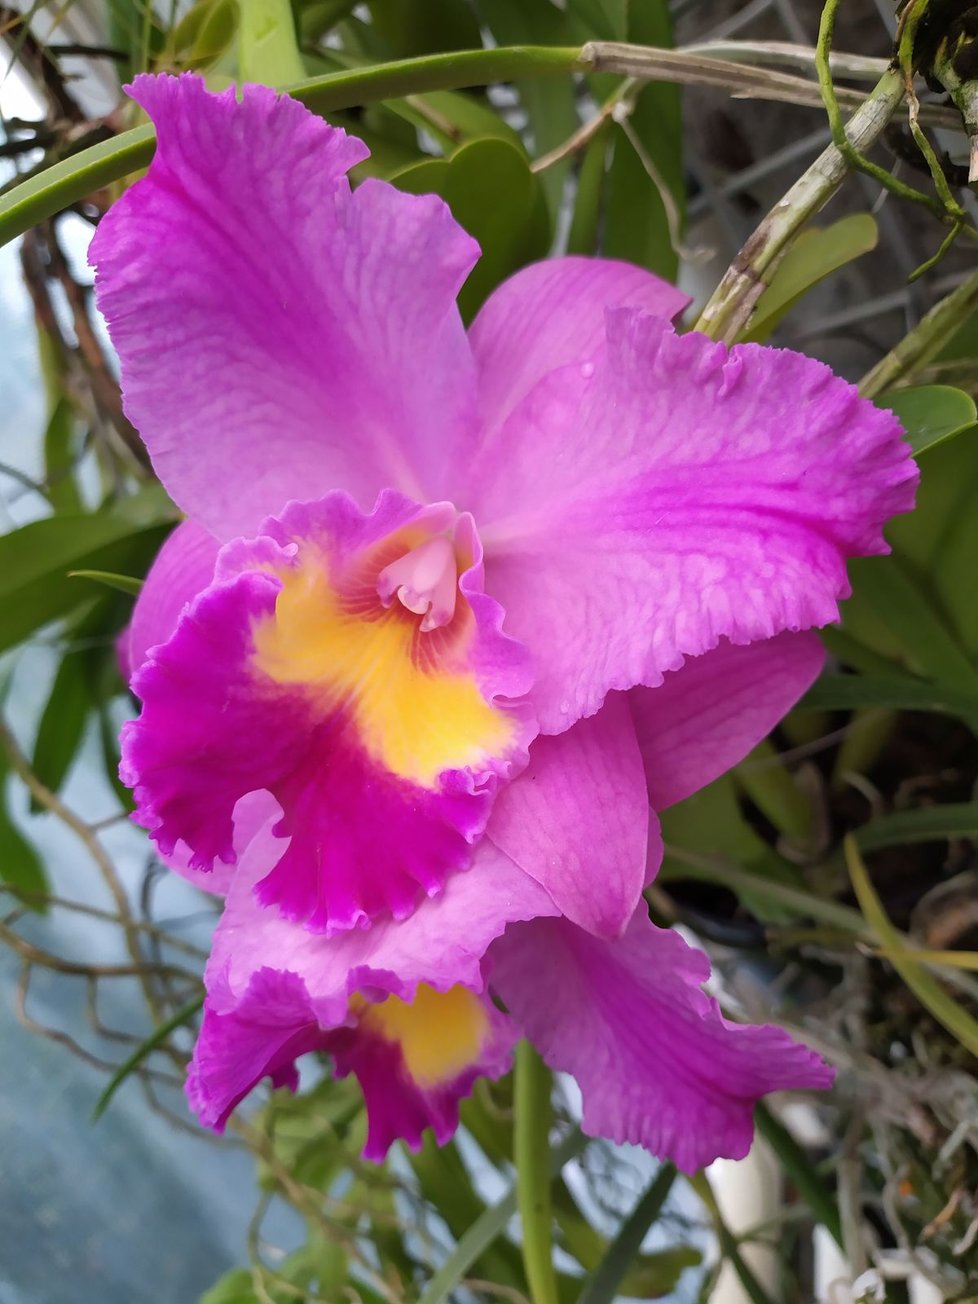 Výstava orchidejí skončila v botanické zahradě předčasně. (ilustrační foto)